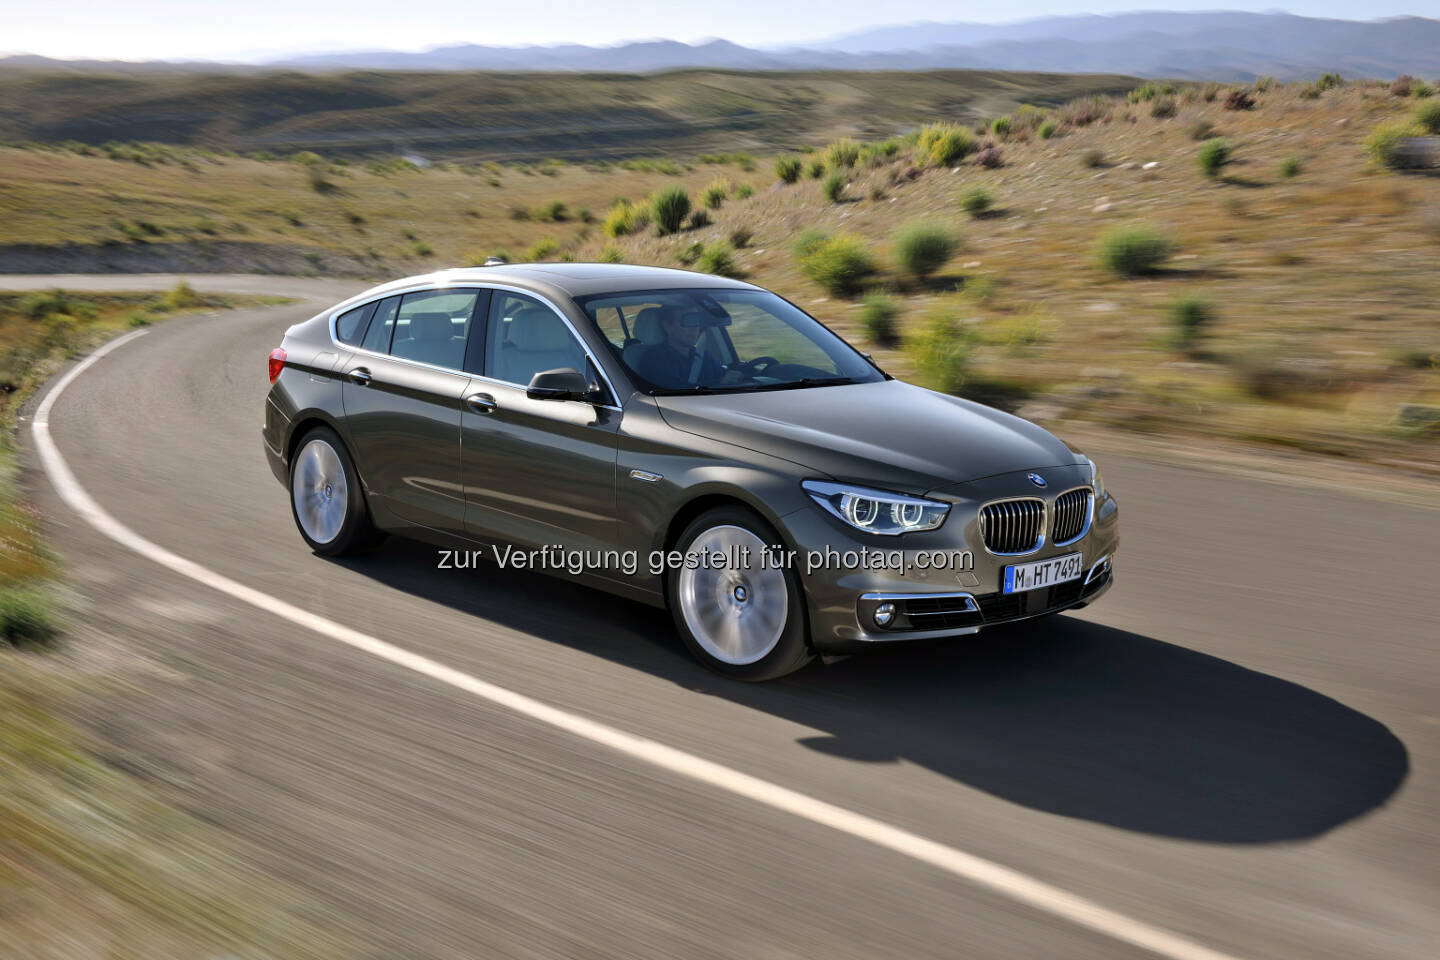 Der BMW 5er Gran Turismo (Luxury Line) : Zwei Millionen verkaufte Fahrzeuge : Die BMW 5er Reihe ist das erfolgreichste Businessmodell der Welt. Seit sechs Jahren Bestseller und Seriensieger bei Leser- und Expertenwahlen : © BMW Group